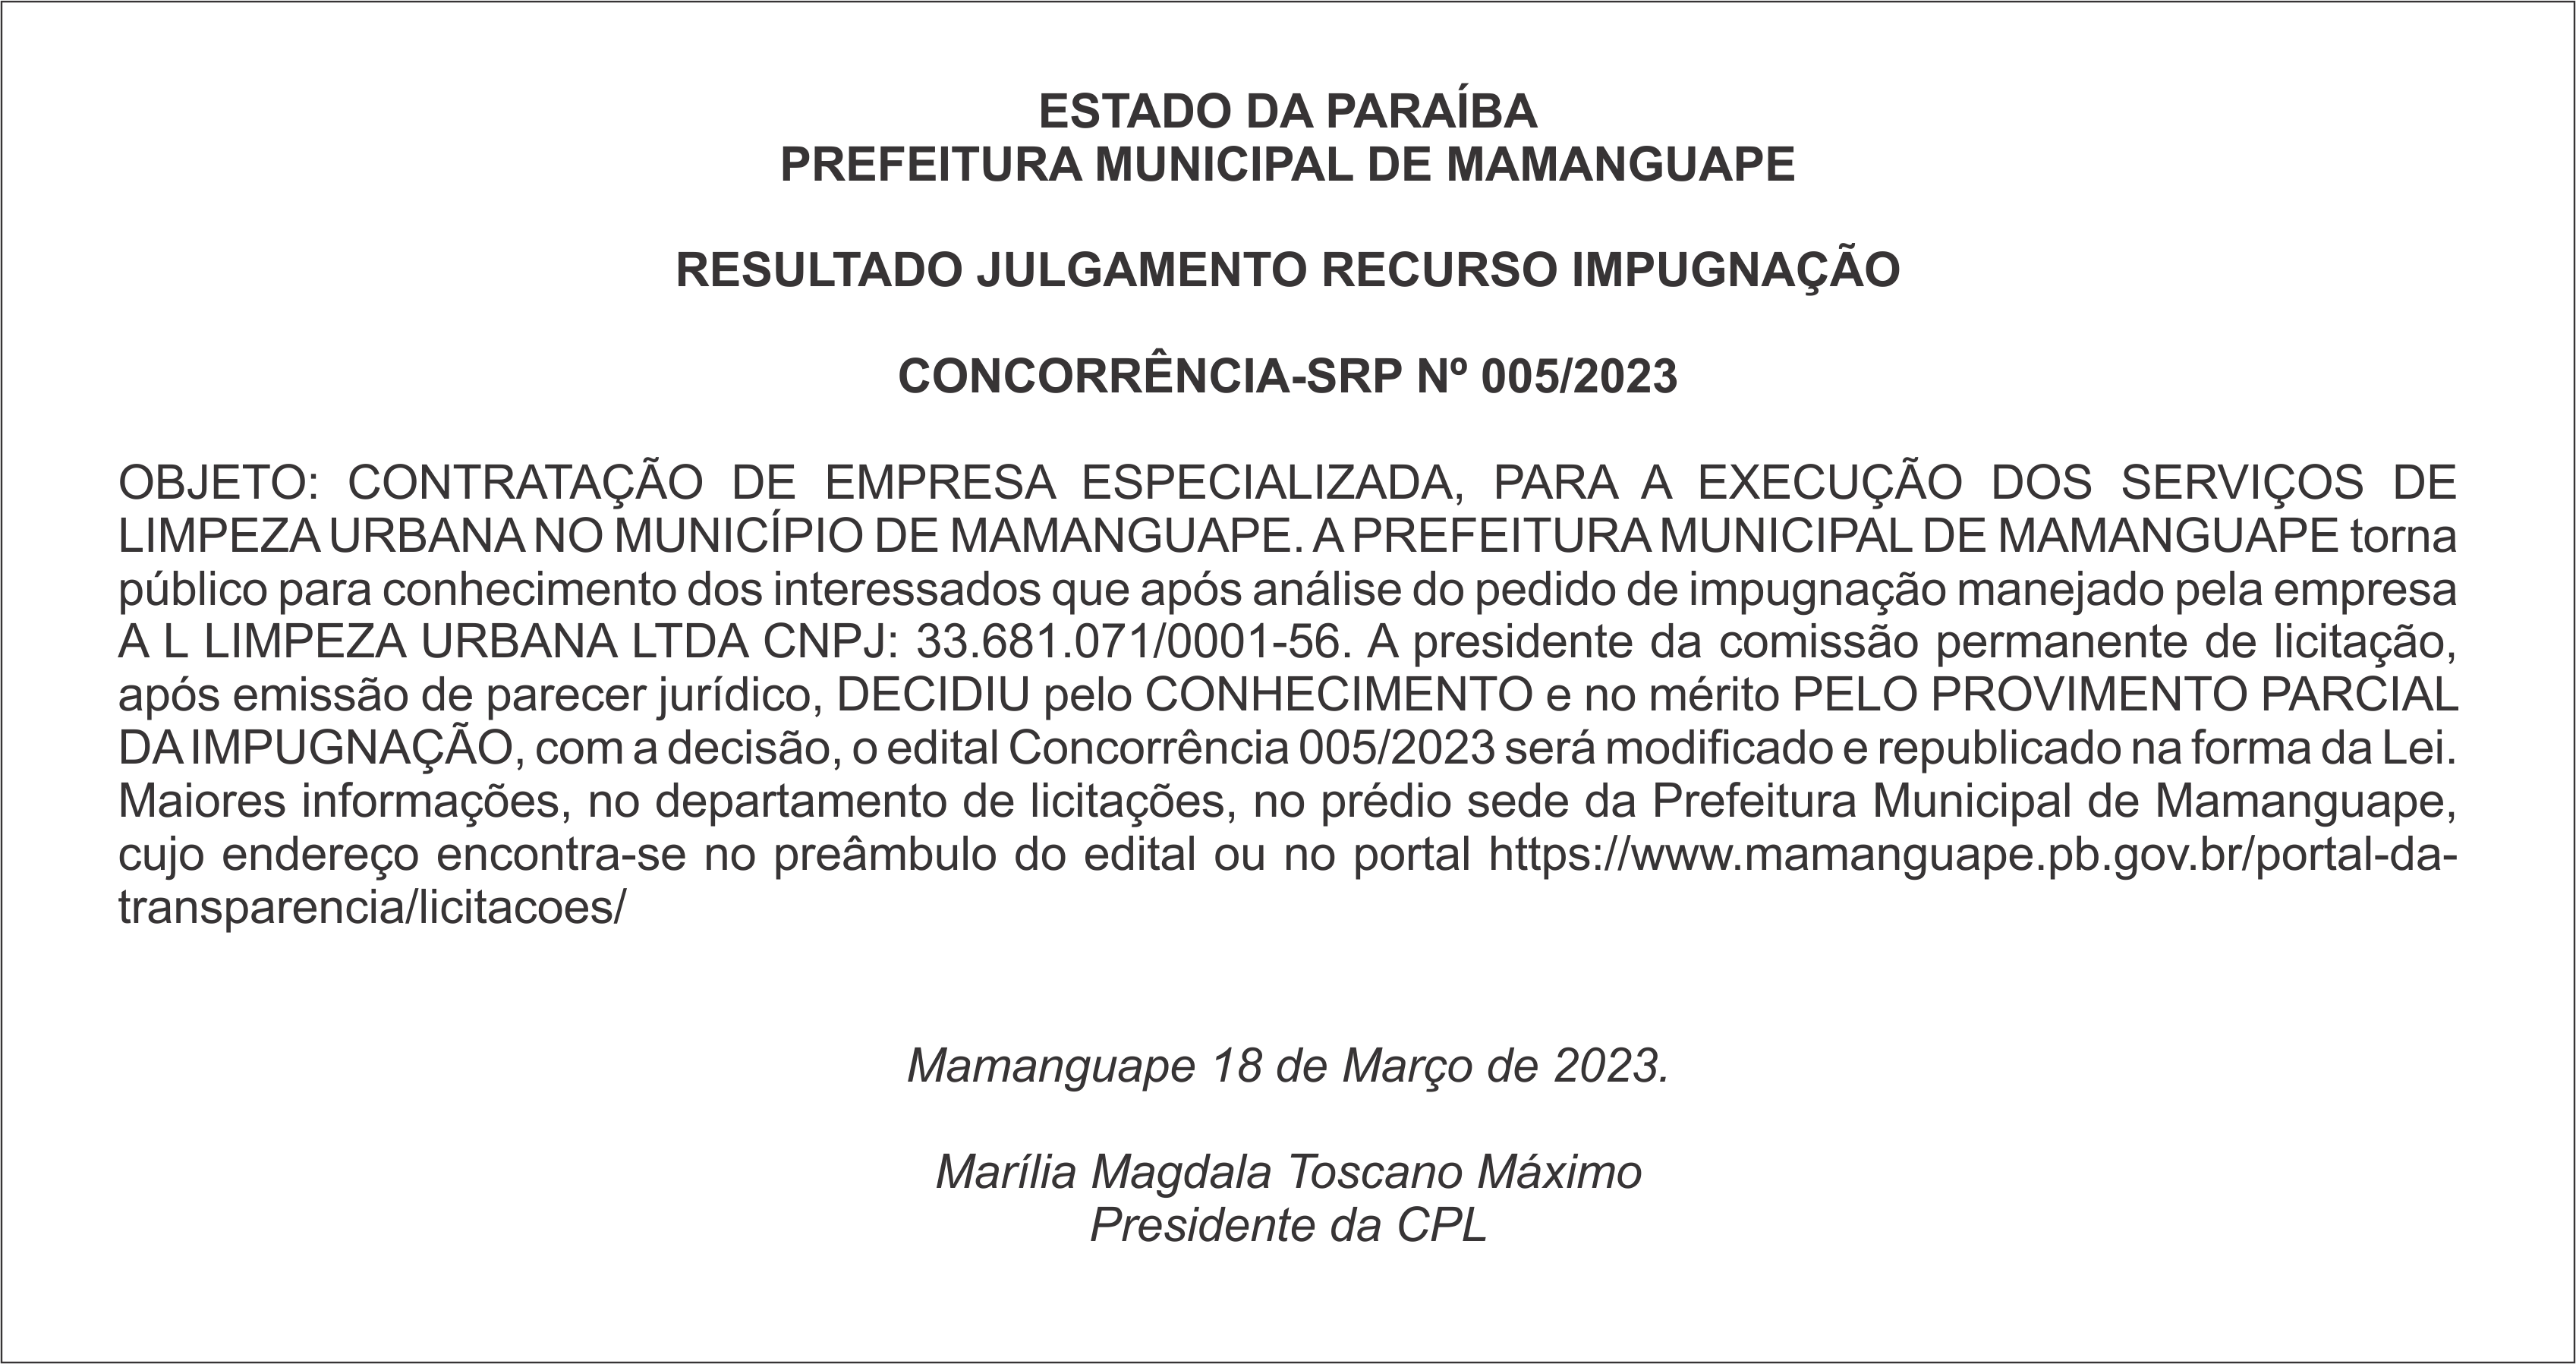 PREFEITURA MUNICIPAL DE MAMANGUAPE – RESULTADO JULGAMENTO RECURSO IMPUGNAÇÃO  – CONCORRÊNCIA-SRP Nº 005/2023